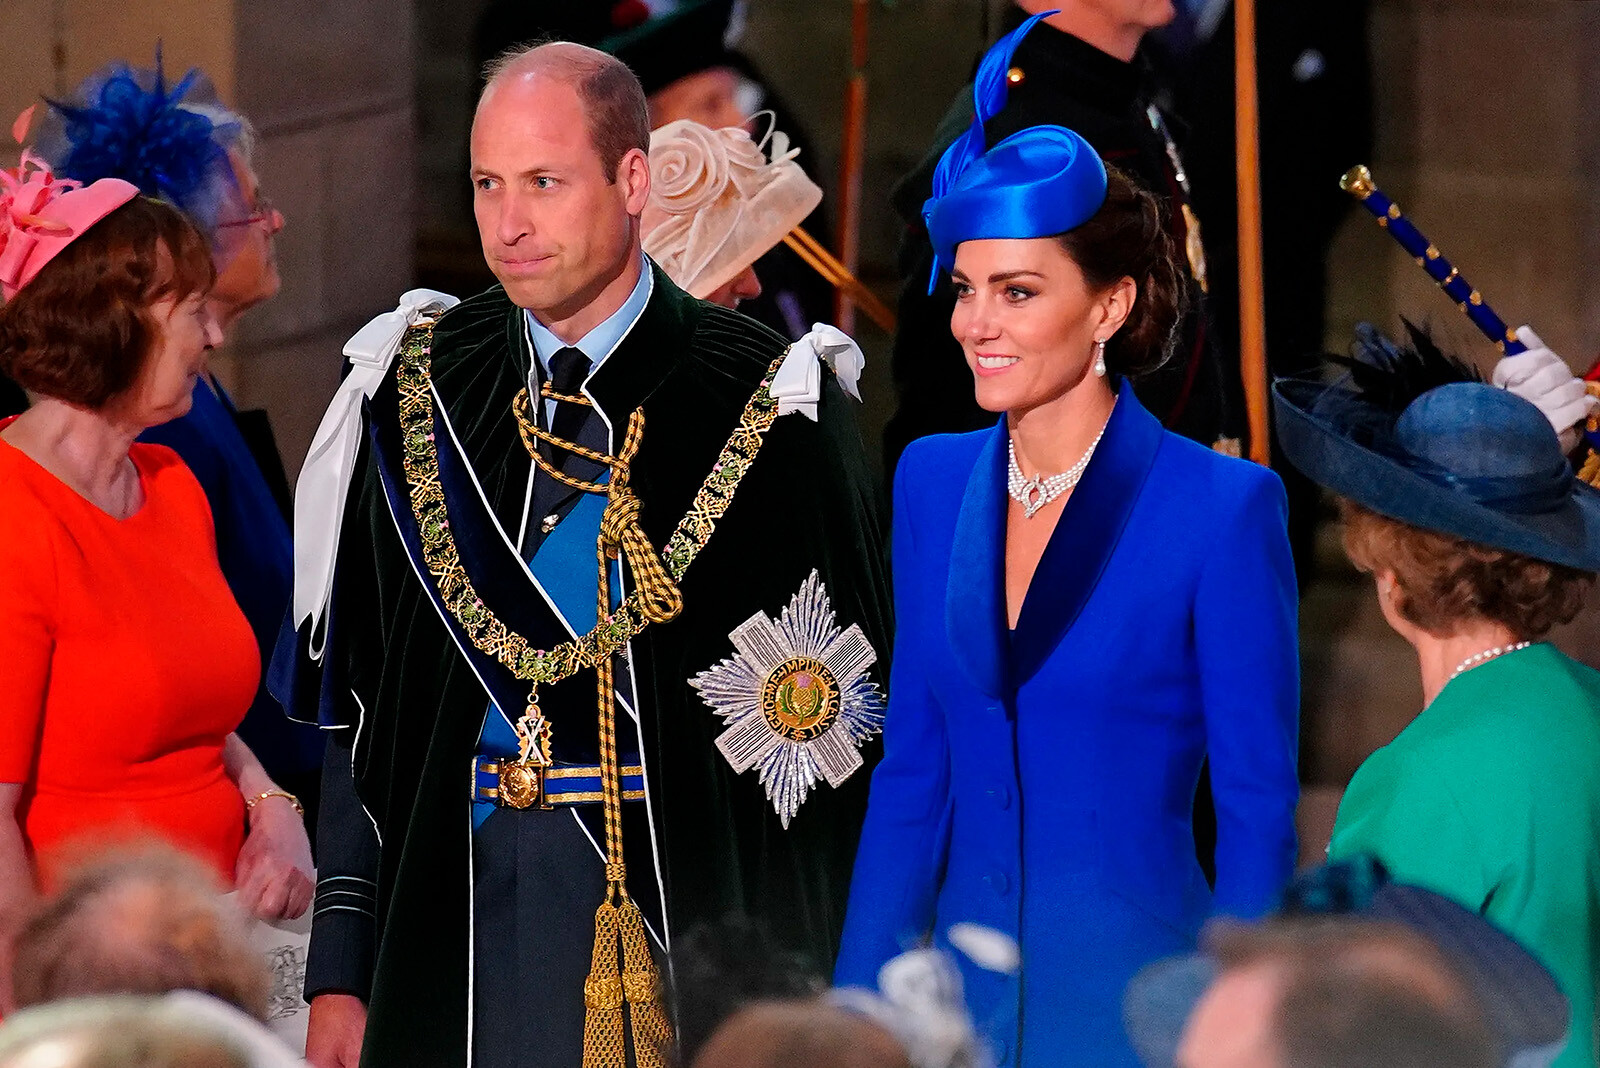 Кейт Миддлтон отдала дань уважения Елизавете II, надев её жемчужное колье на вторую коронацию Карла III